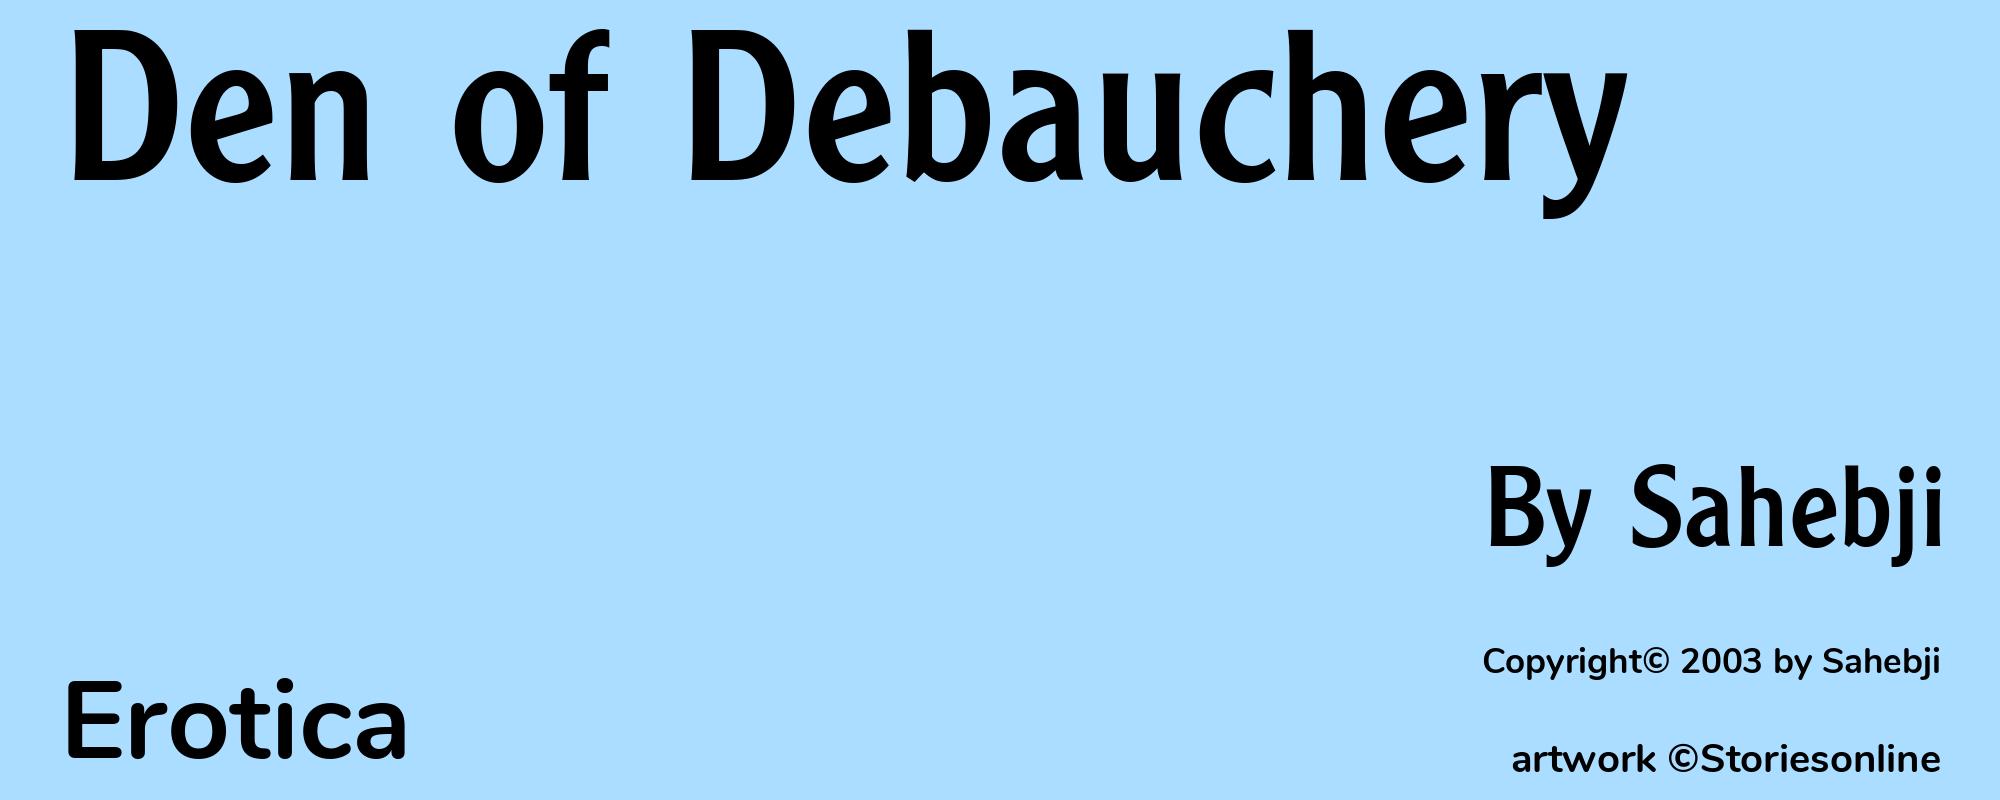 Den of Debauchery - Cover